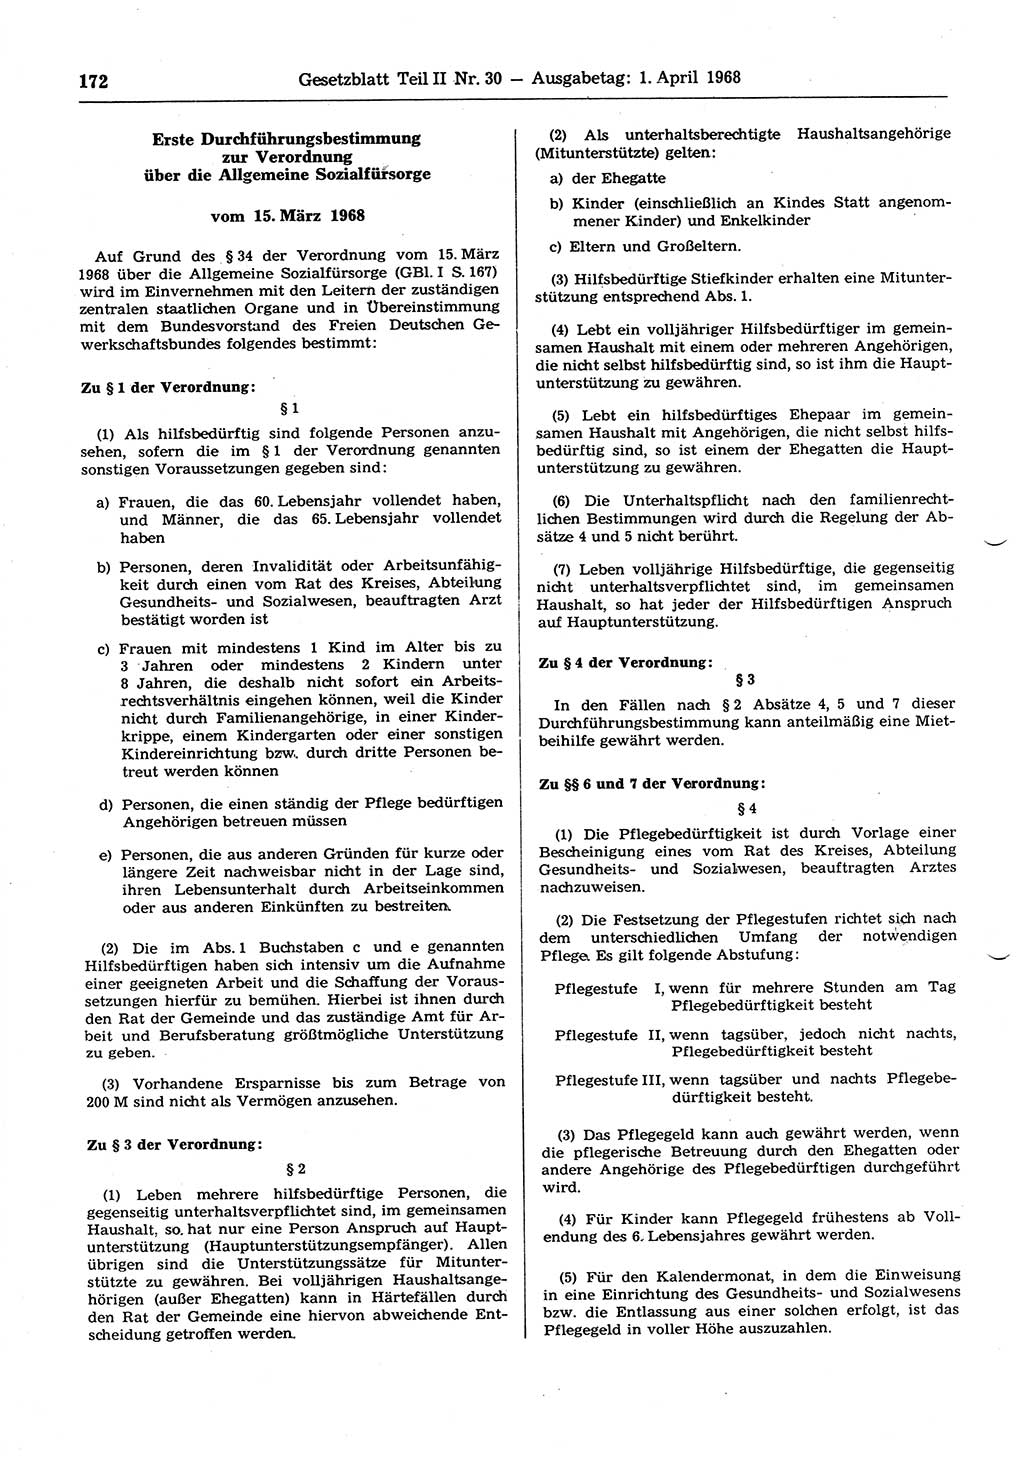 Gesetzblatt (GBl.) der Deutschen Demokratischen Republik (DDR) Teil ⅠⅠ 1968, Seite 172 (GBl. DDR ⅠⅠ 1968, S. 172)